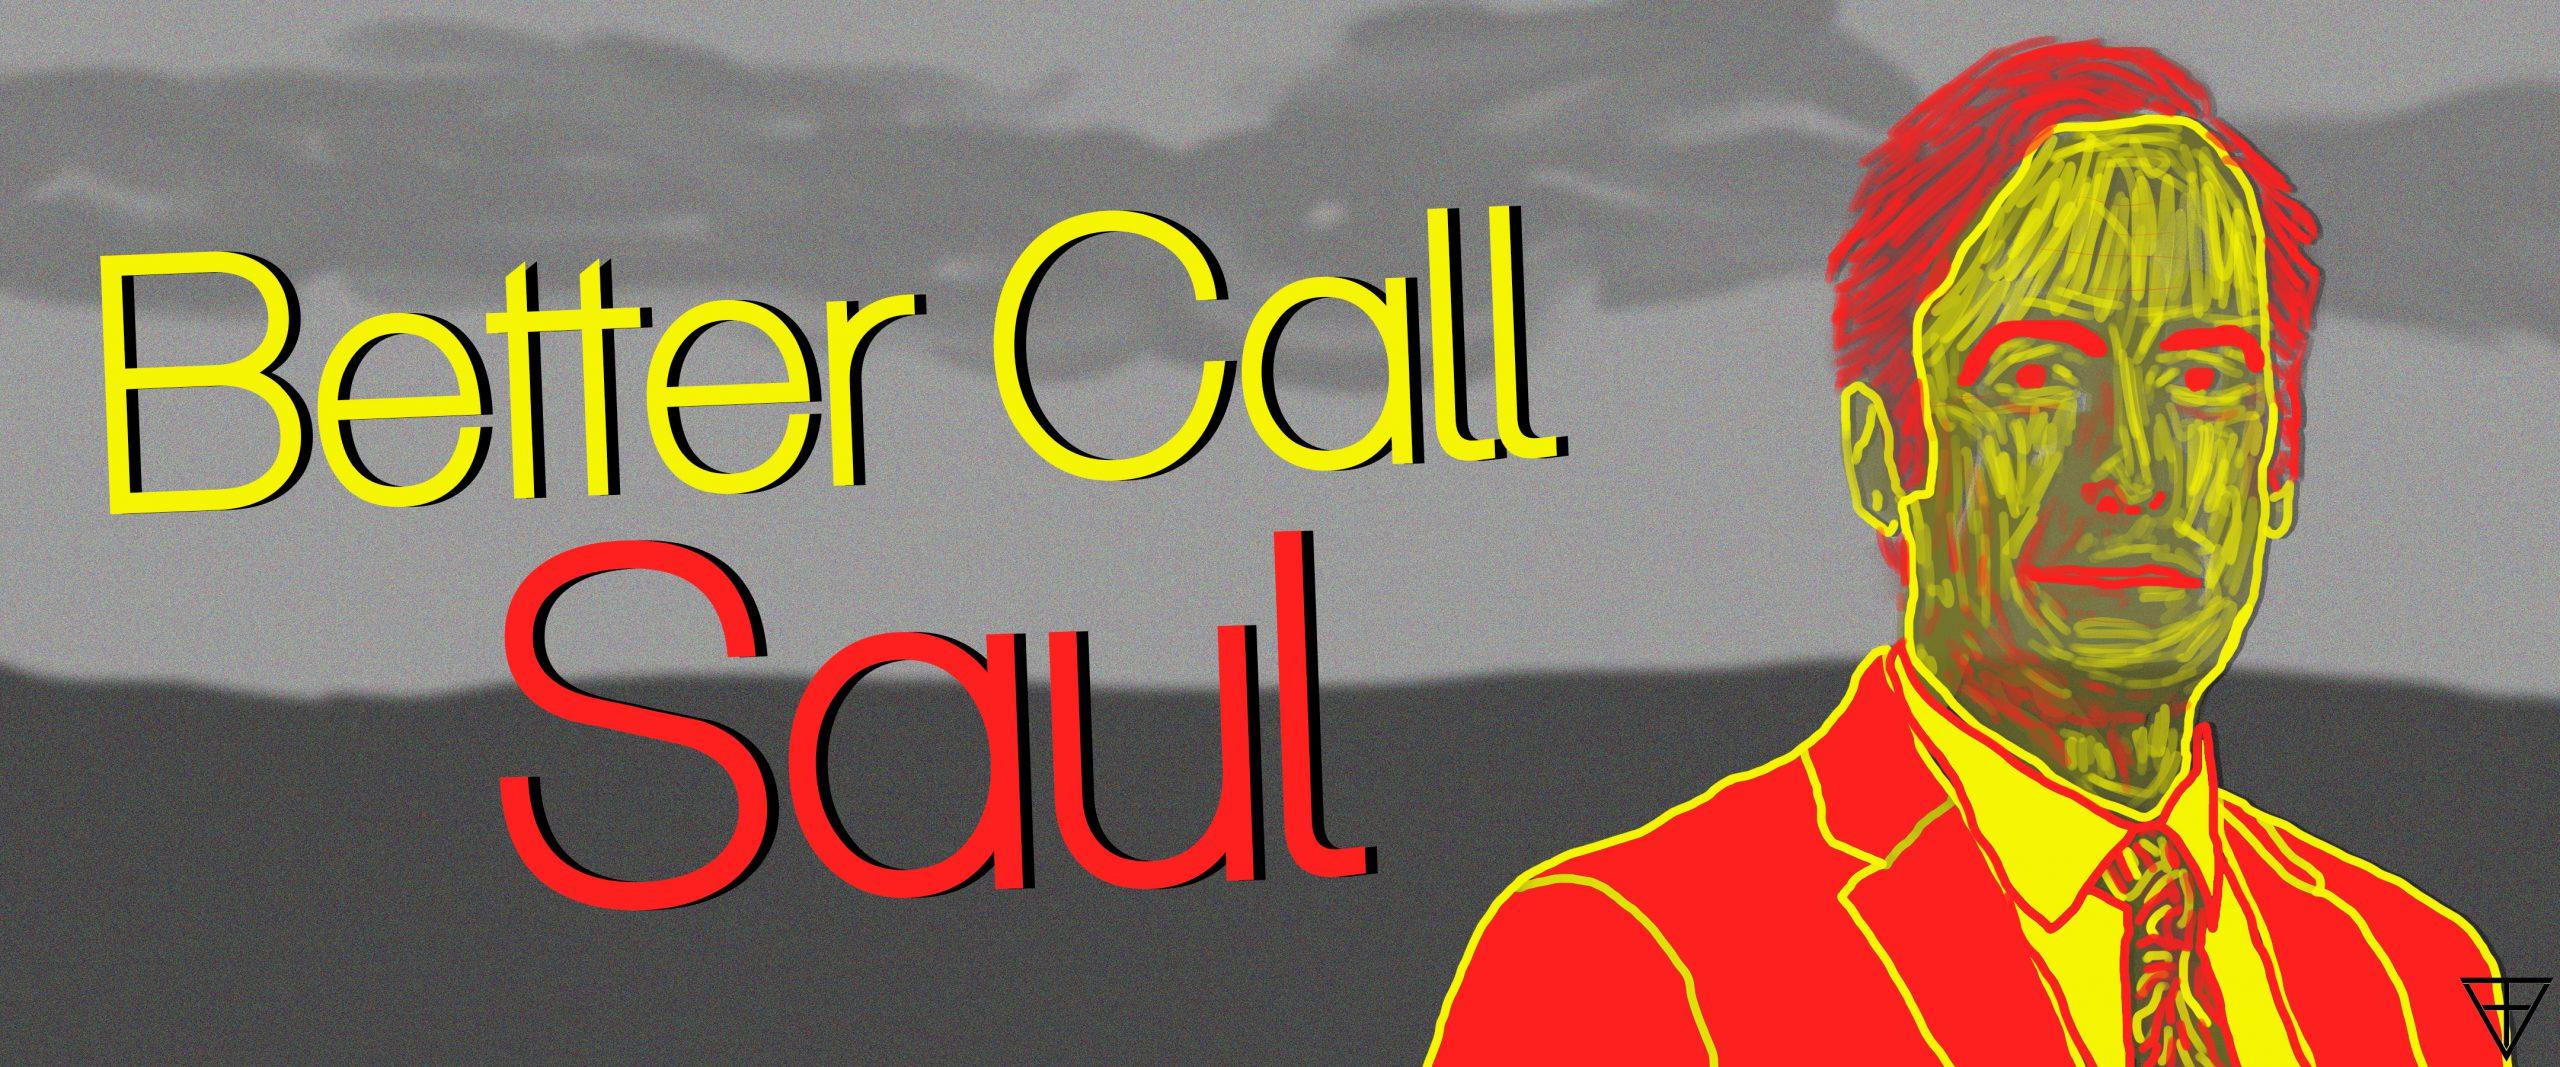 Better Call Saul 5